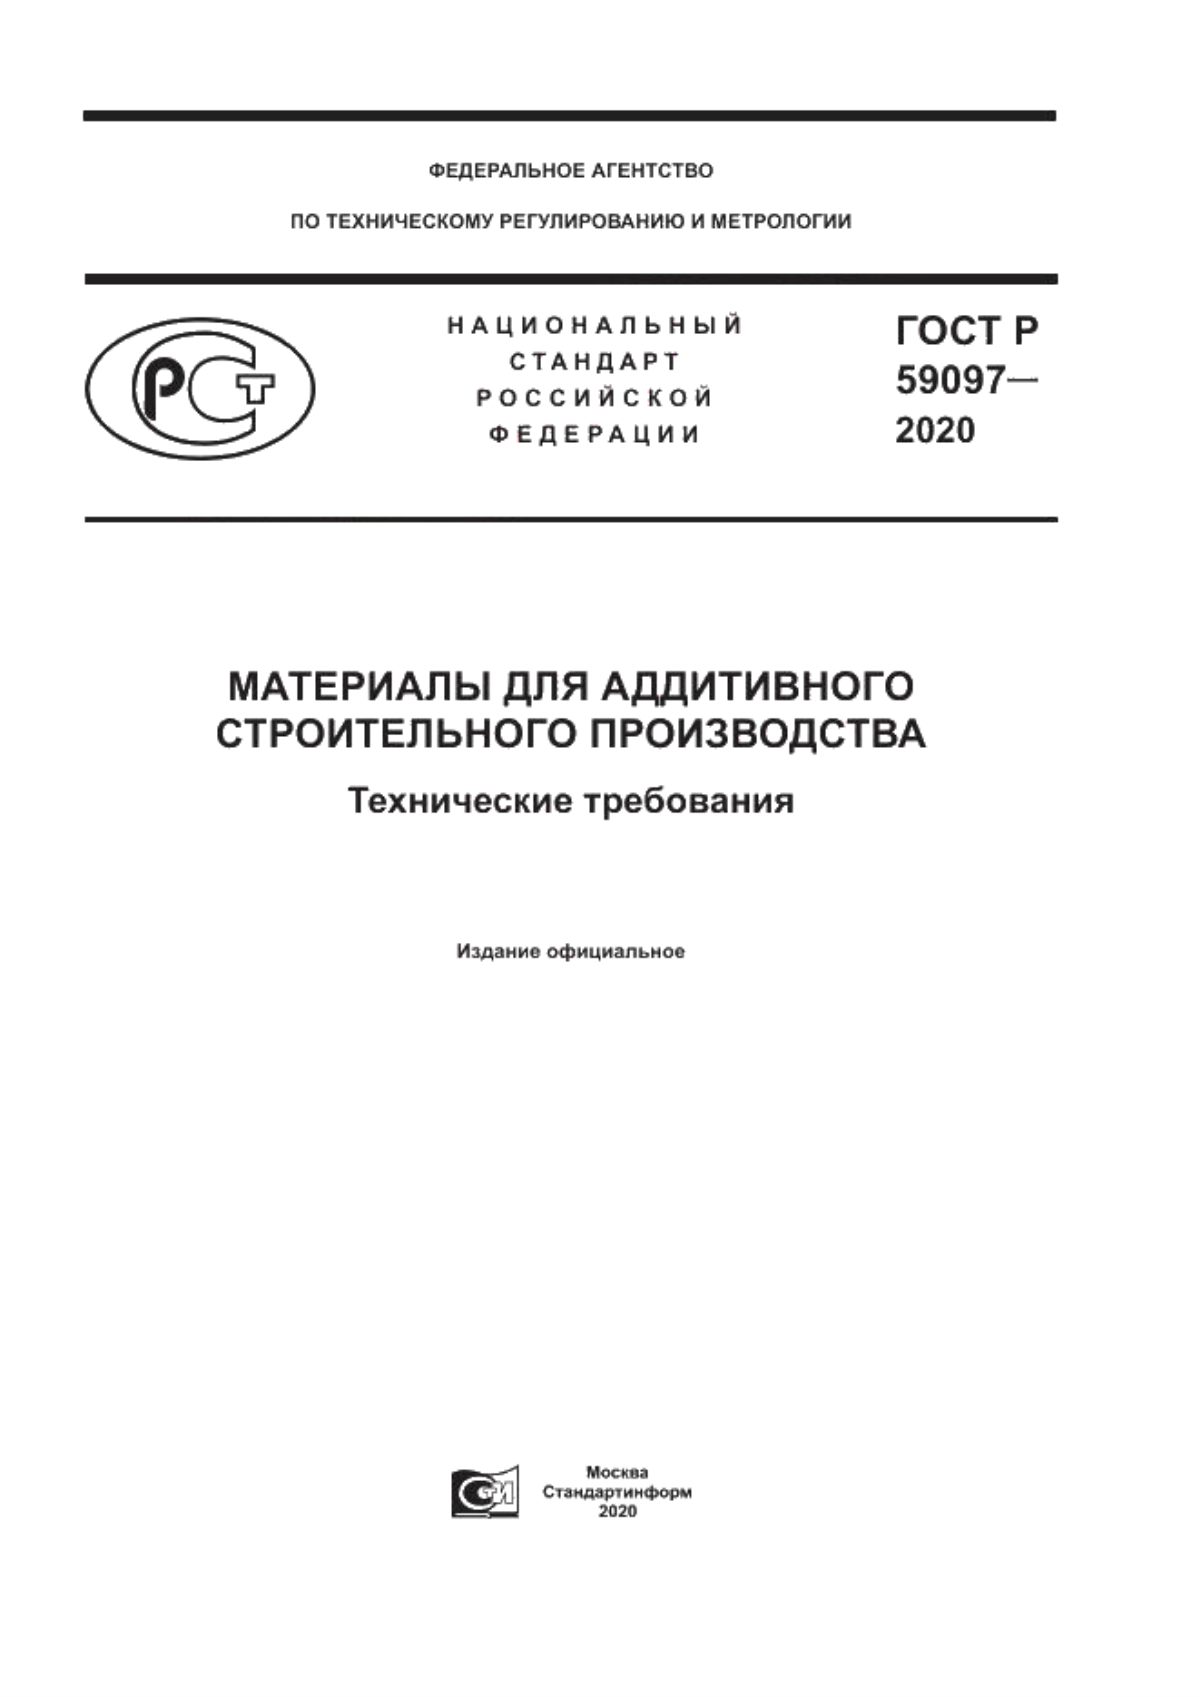 ГОСТ Р 59097-2020 Материалы для аддитивного строительного производства. Технические требования